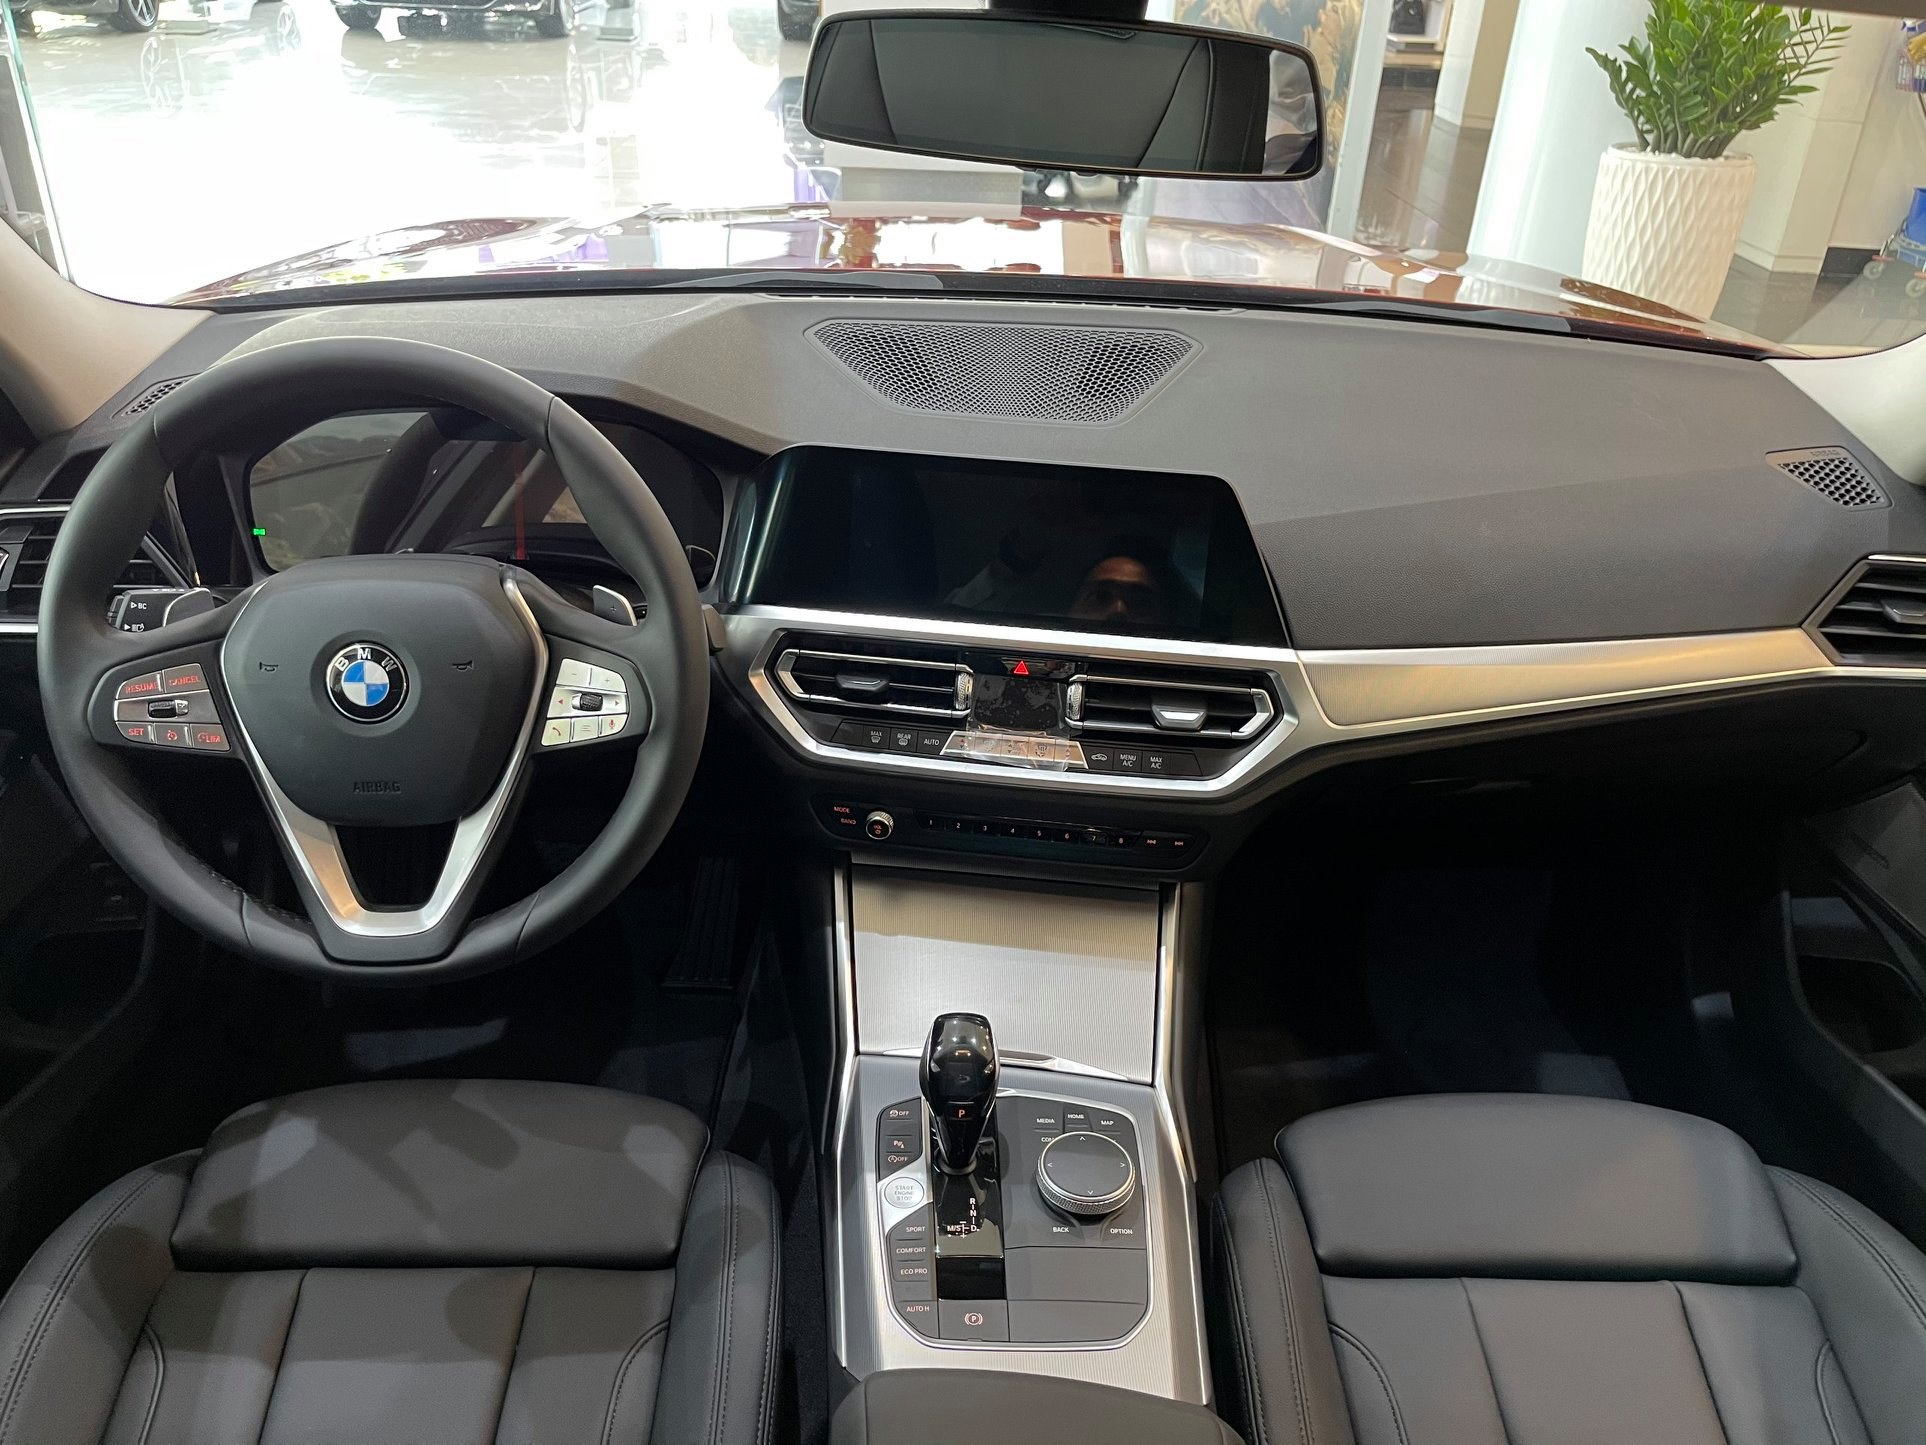 BMW 3-Series giảm giá 190 triệu đồng tại đại lý, rút ngắn khoảng cách giá đấu Mercedes-Benz C-Class - Ảnh 4.